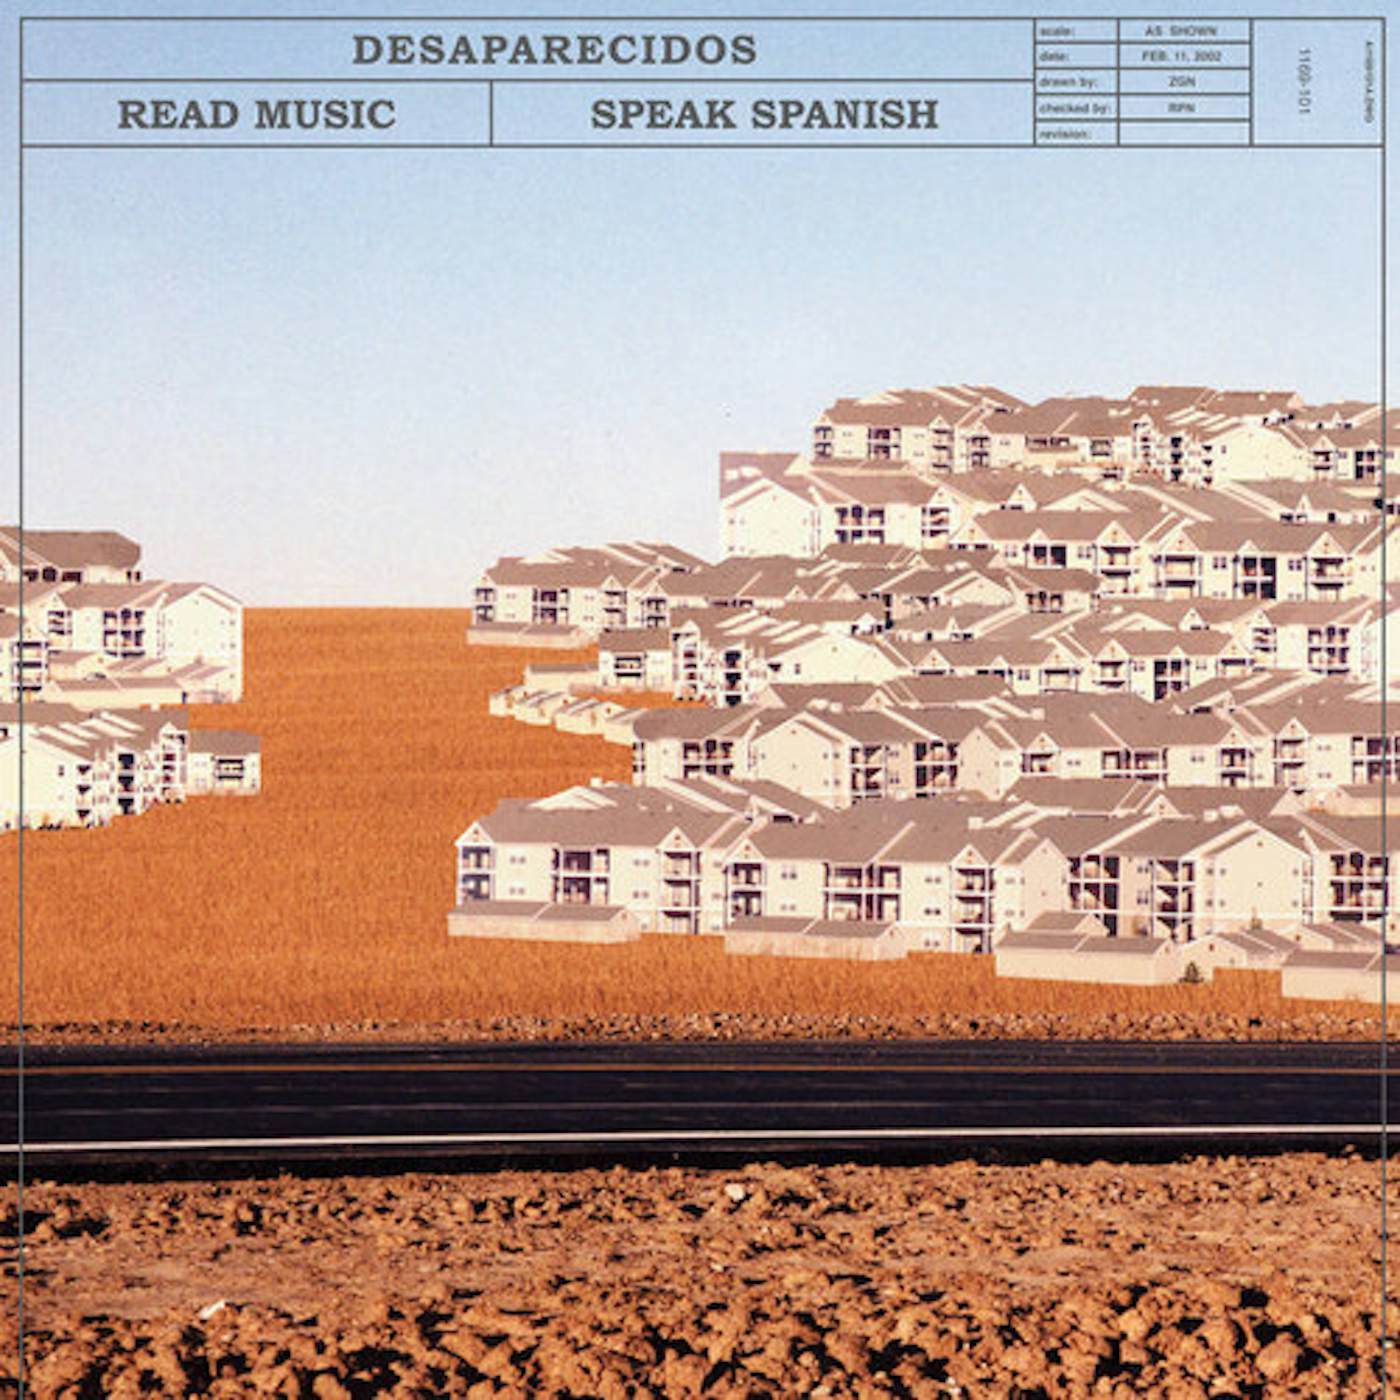 Desaparecidos READ MUSIC / SPEAK SPANISH Vinyl Record